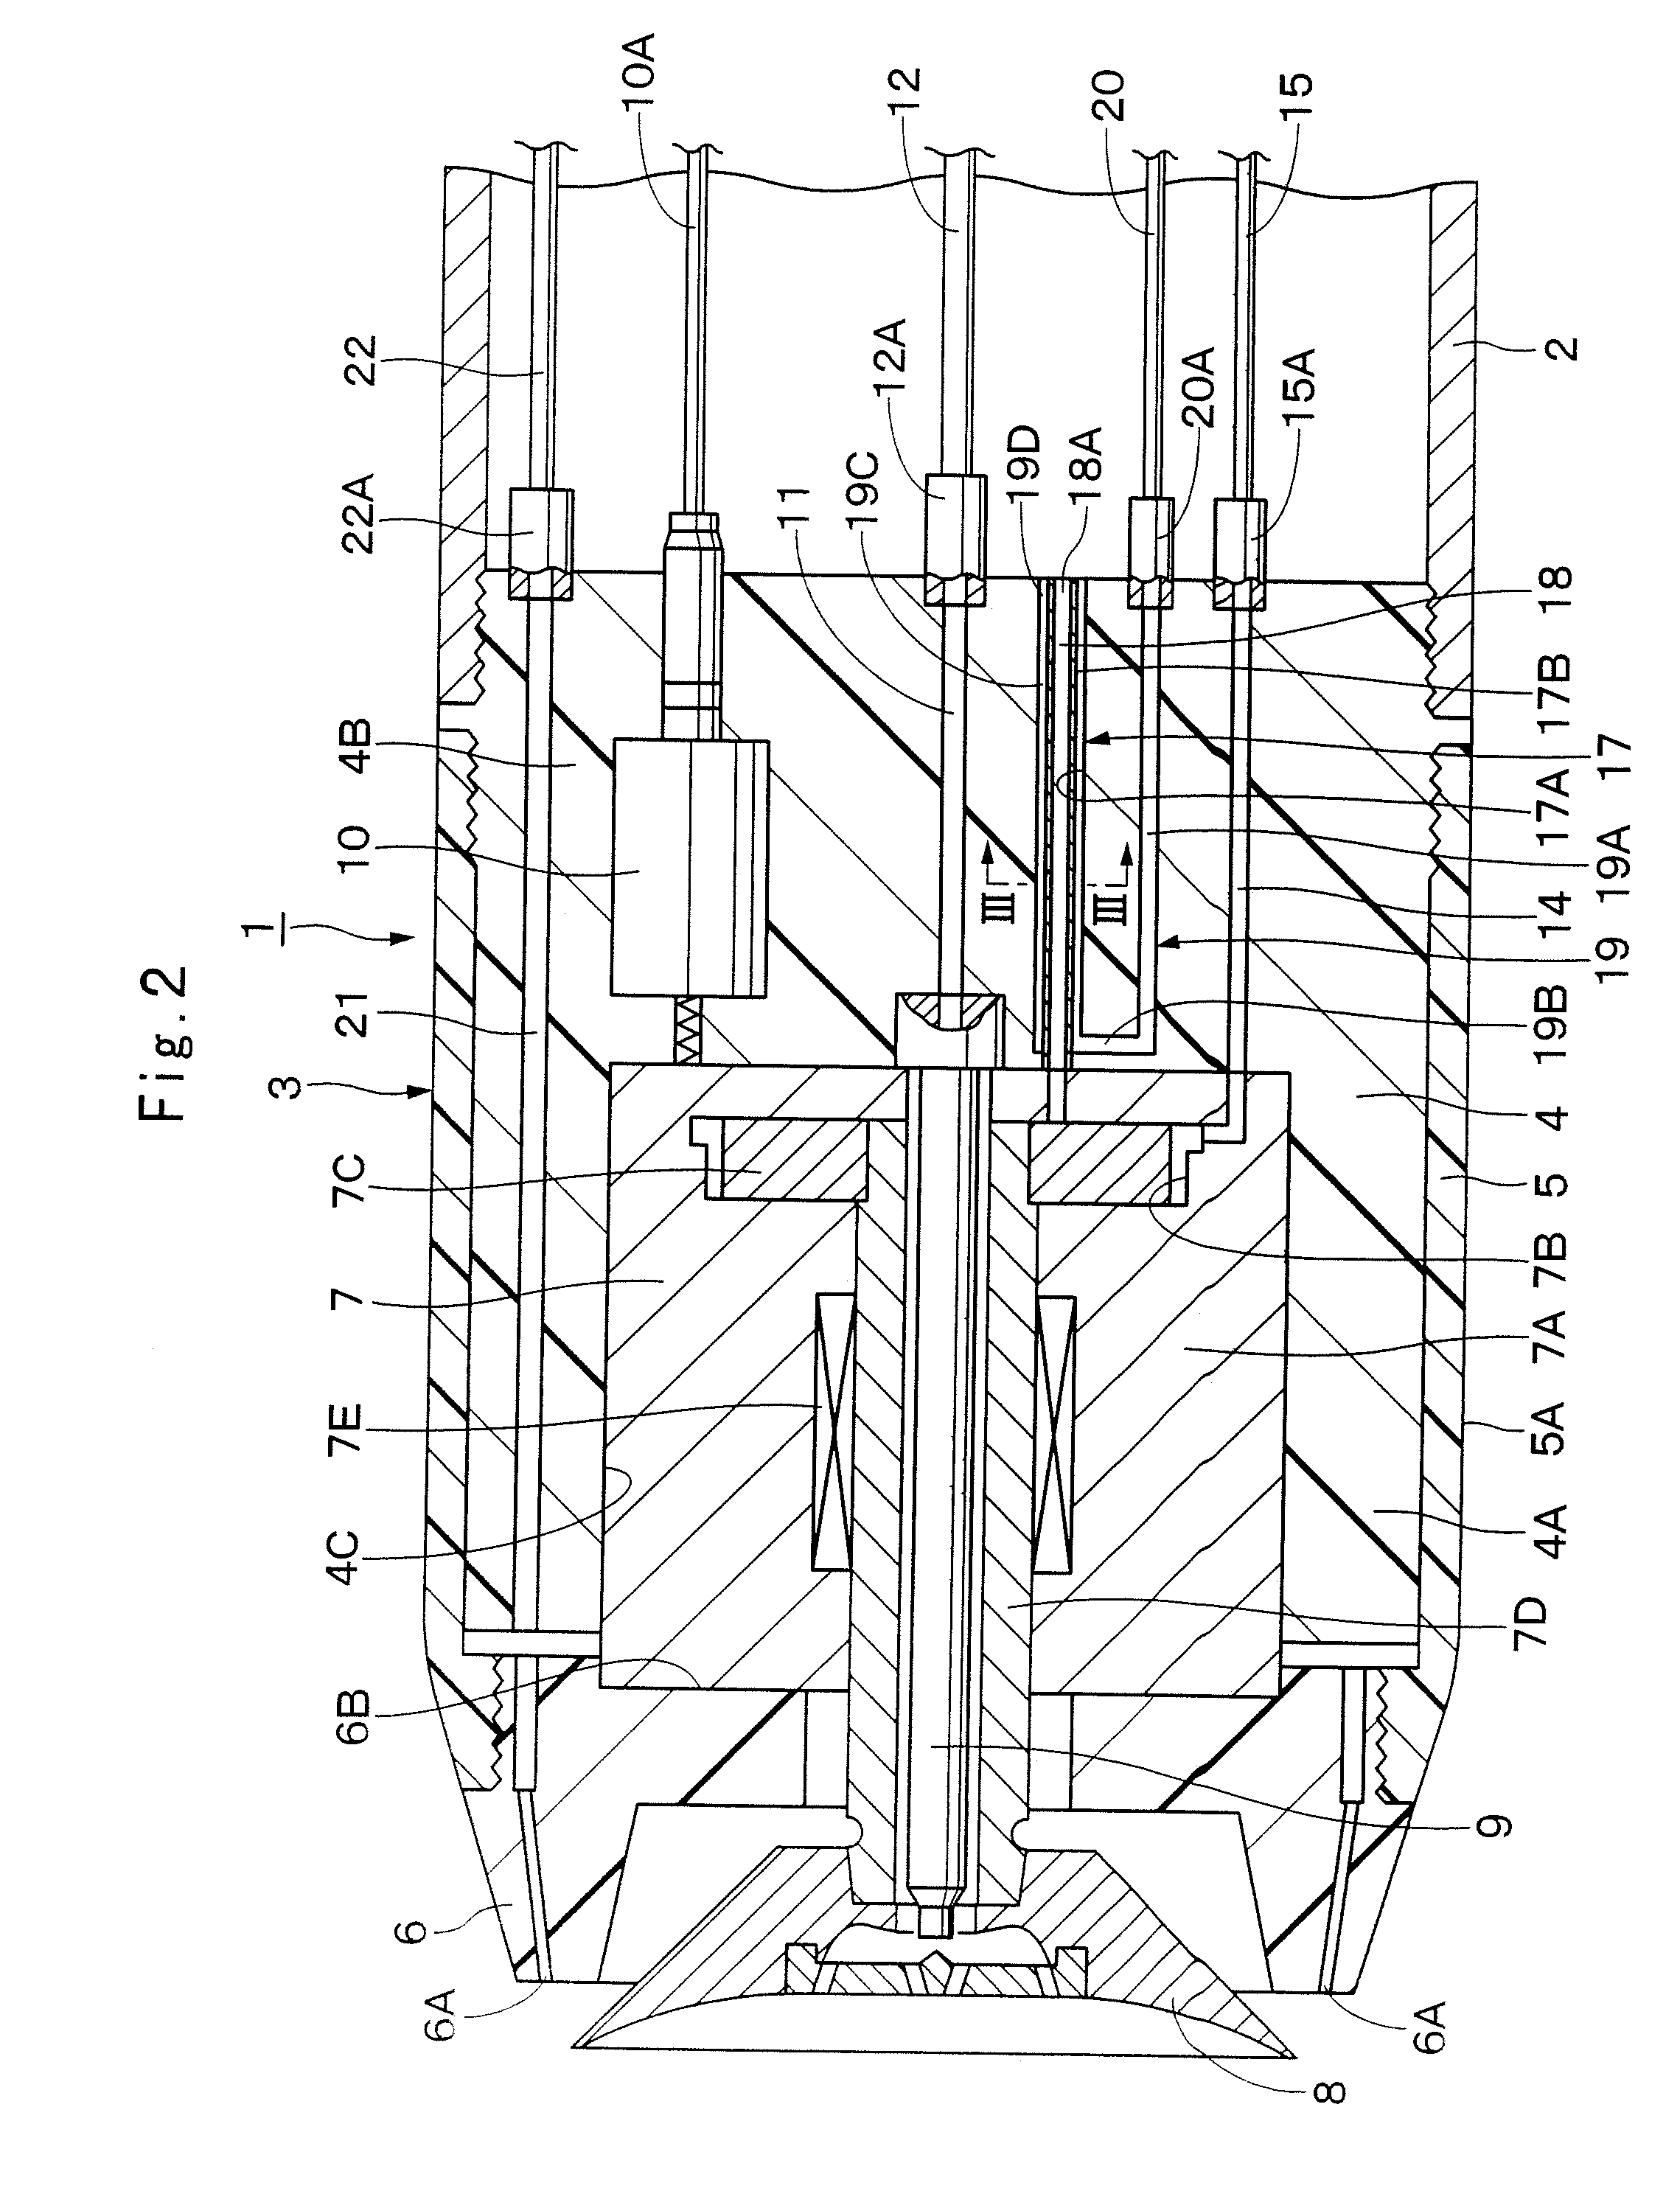 Rotary atomizing-head type coating machine